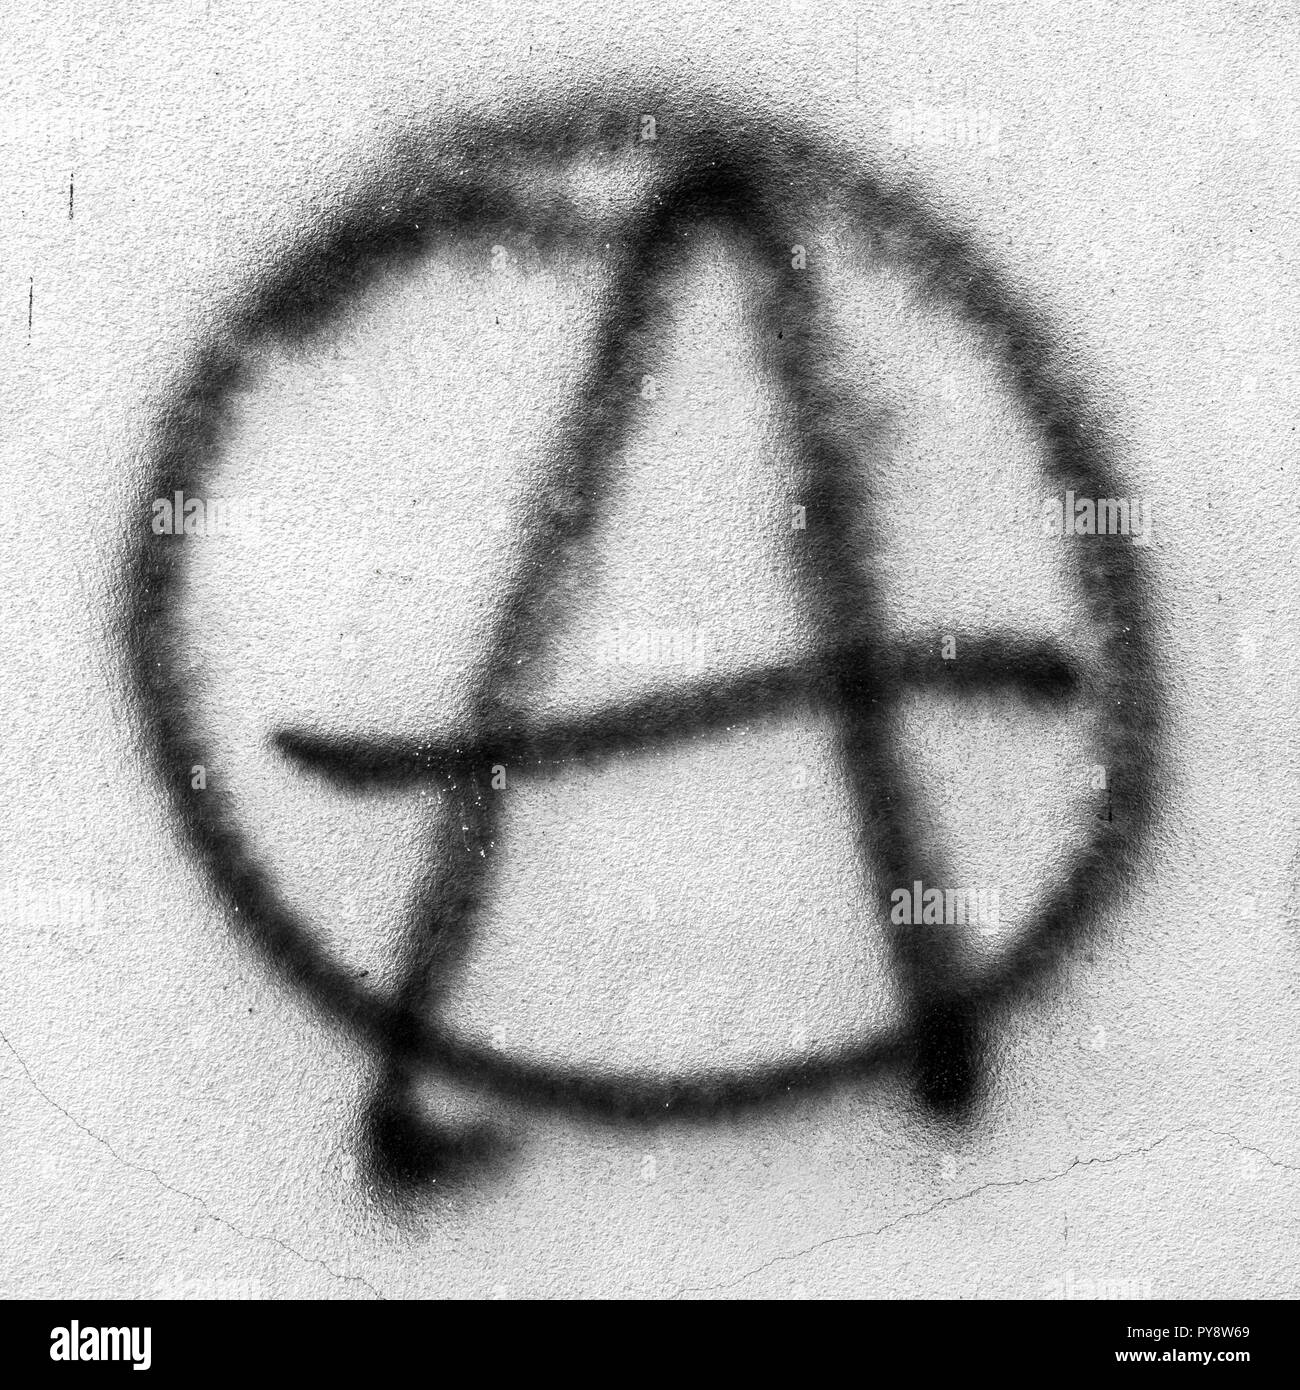 Symbole de l'anarchie peint sur le mur Banque D'Images